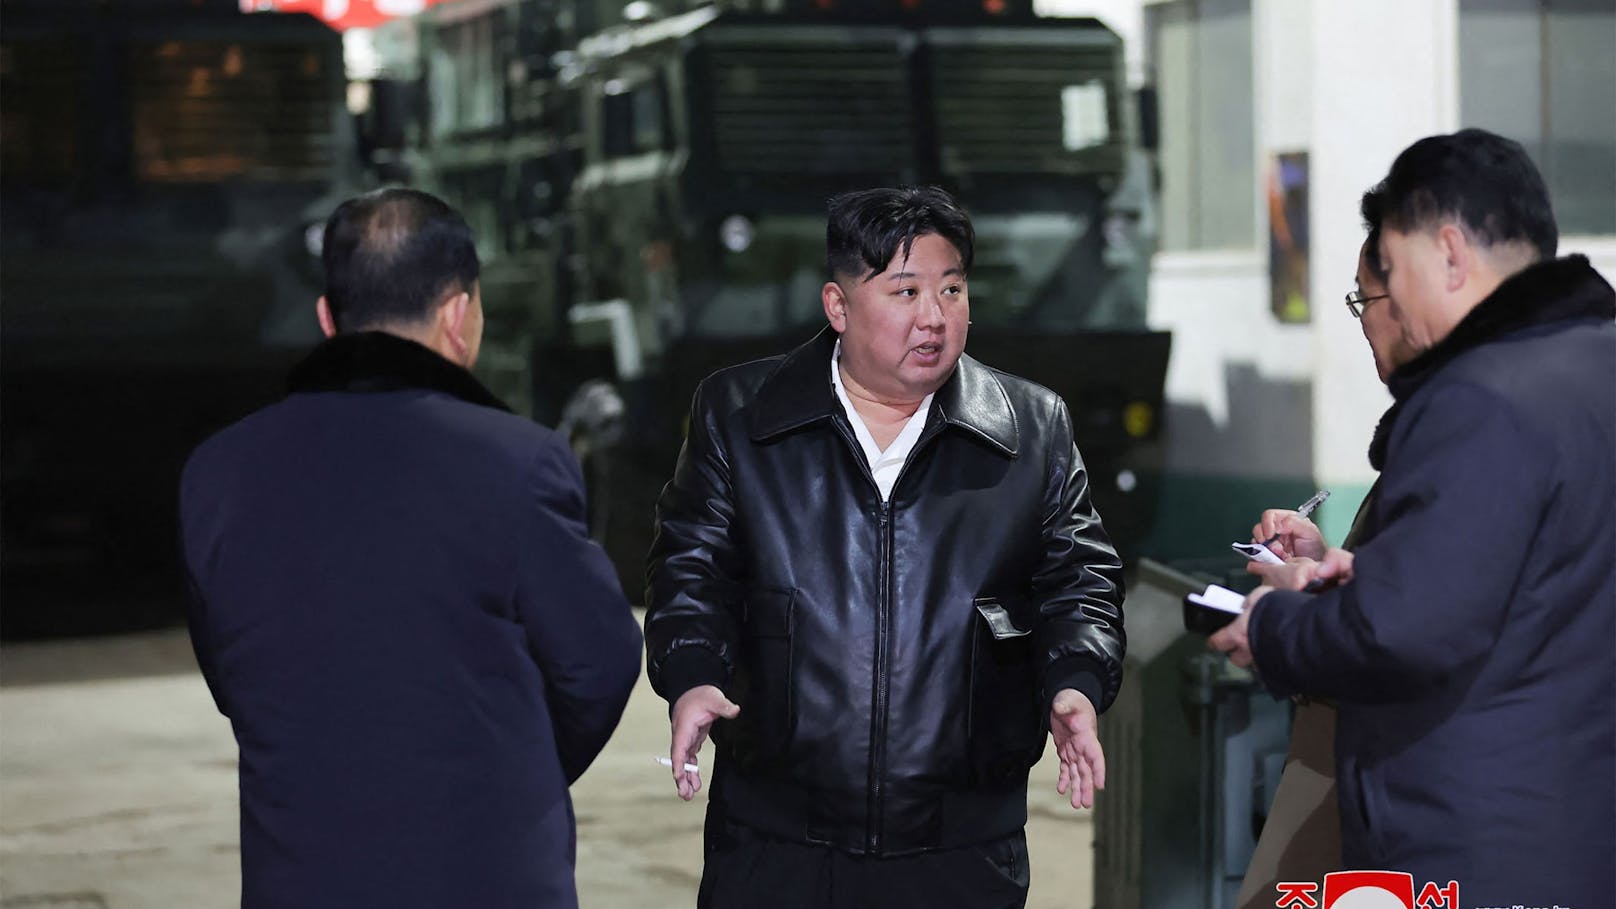 Diese Woche veröffentlichten die nordkoreanischen Behörden Bilder vom nordkoreanischen Führer Kim Jong Un bei der Inspektion einer Munitionsfabrik.